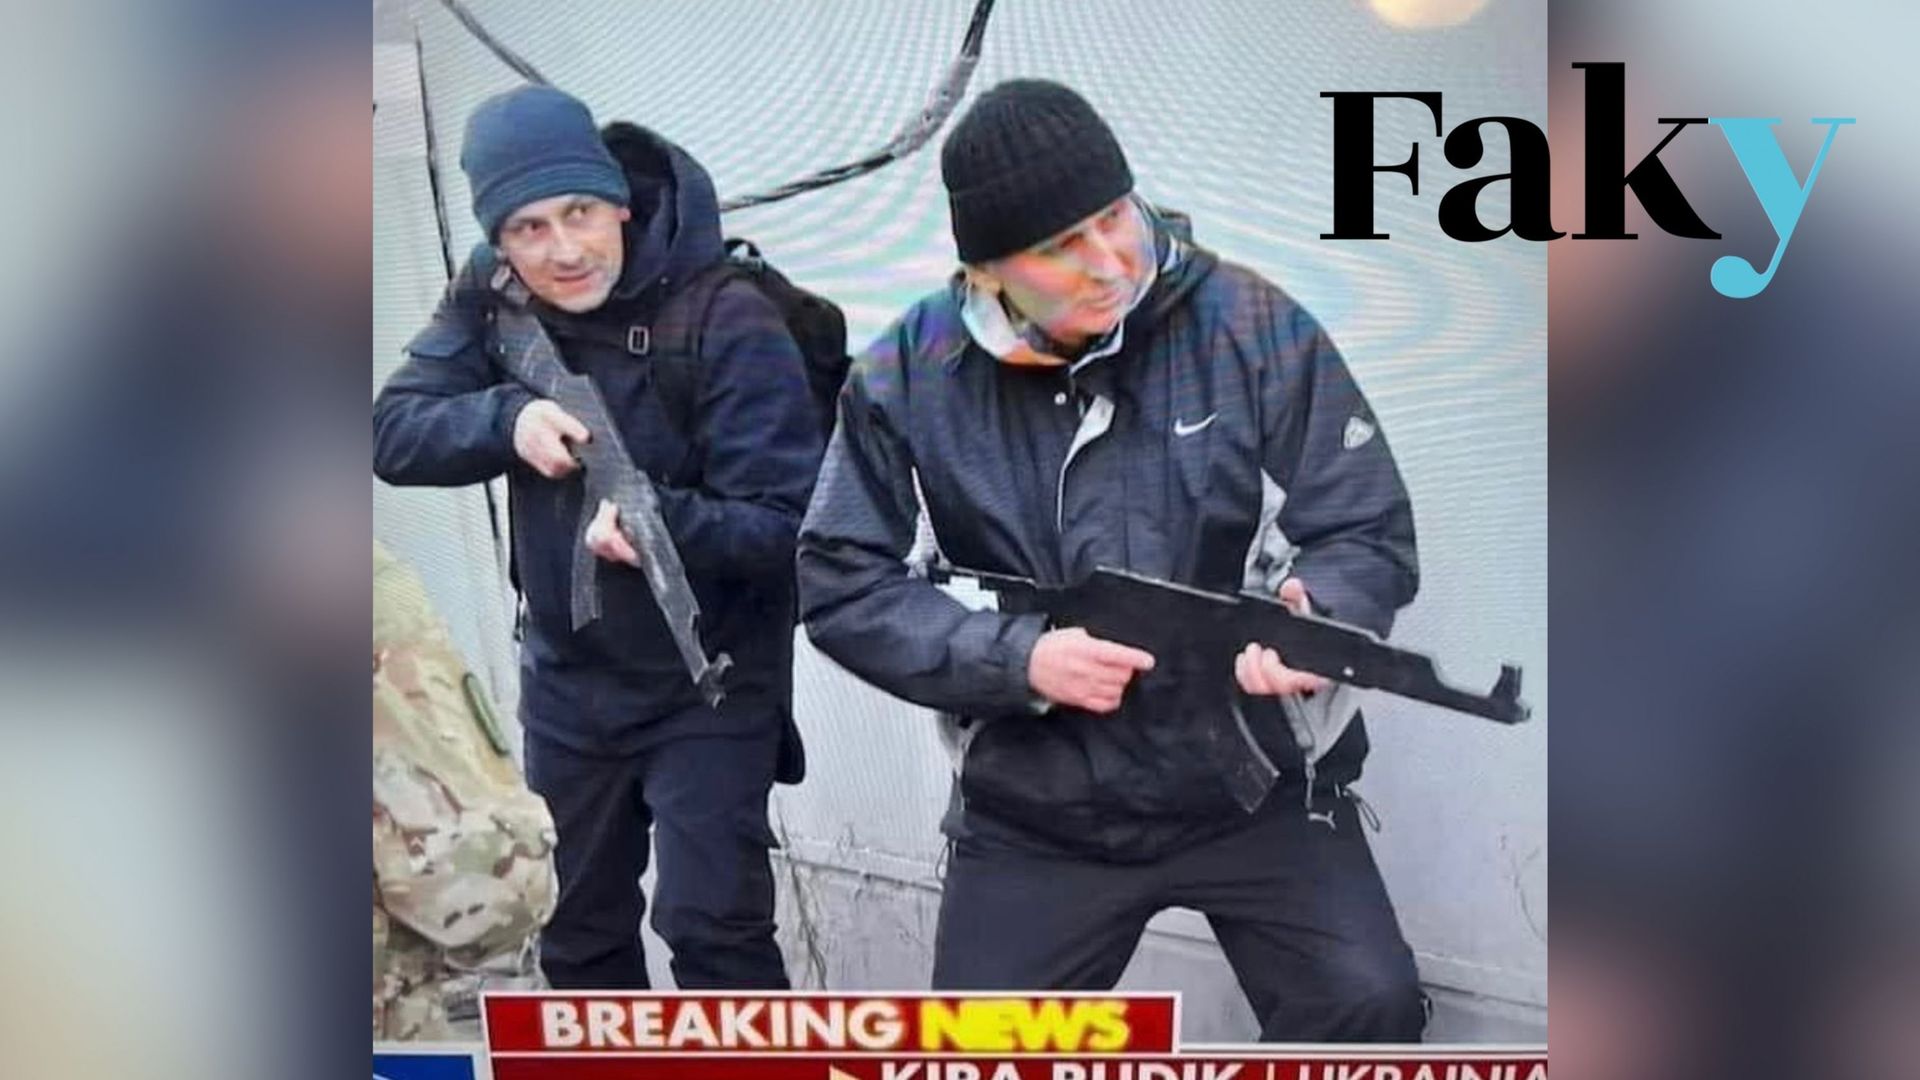 Cette image ne montre pas que des fausses armes sont distribuées aux civils ukrainiens dans la guerre contre la Russie